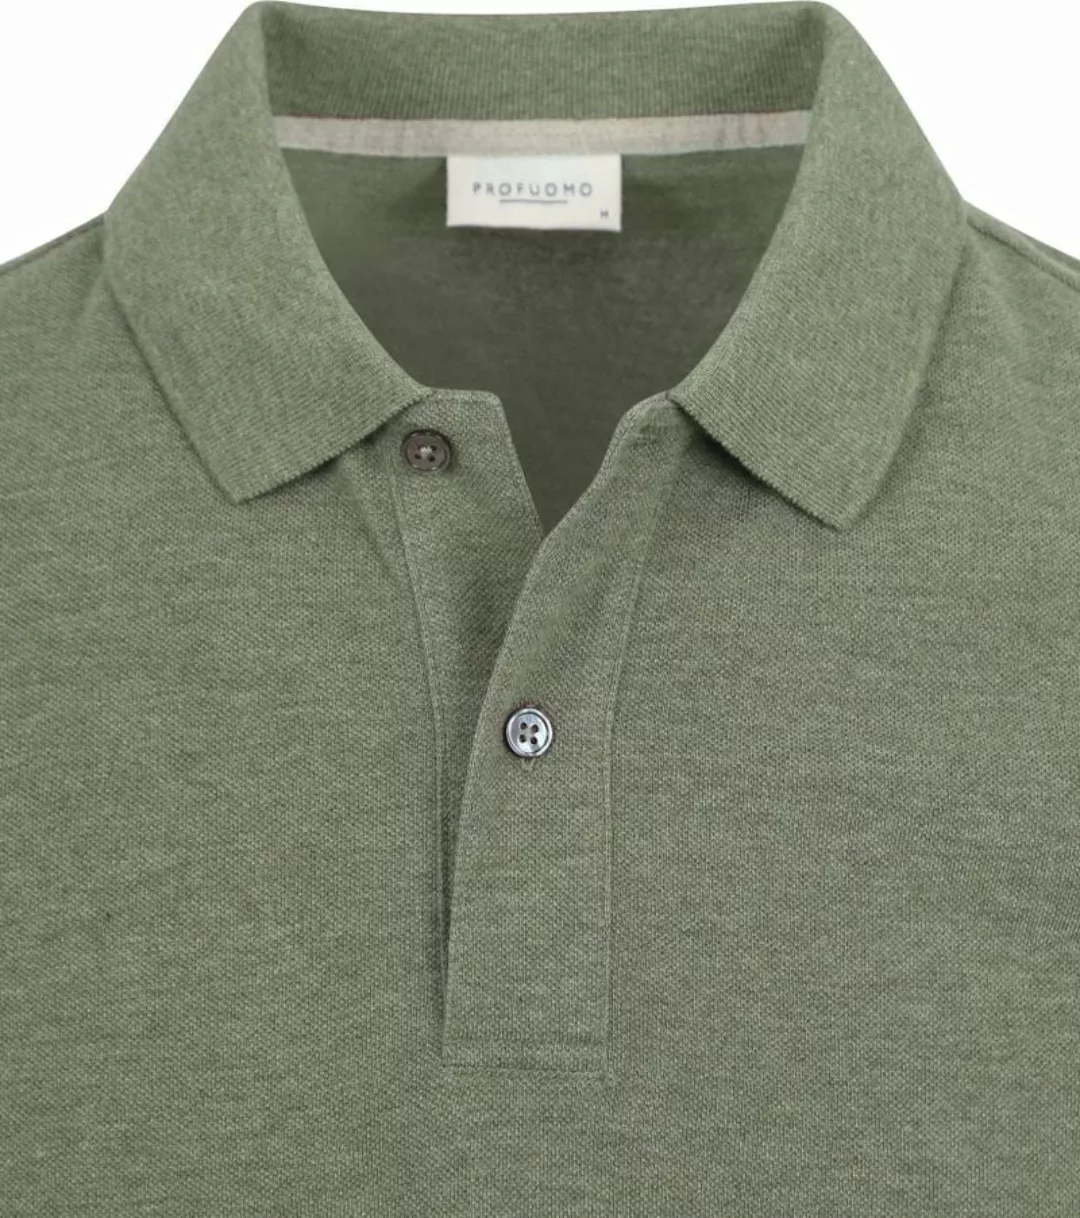 Profuomo Piqué Poloshirt Grün - Größe XL günstig online kaufen